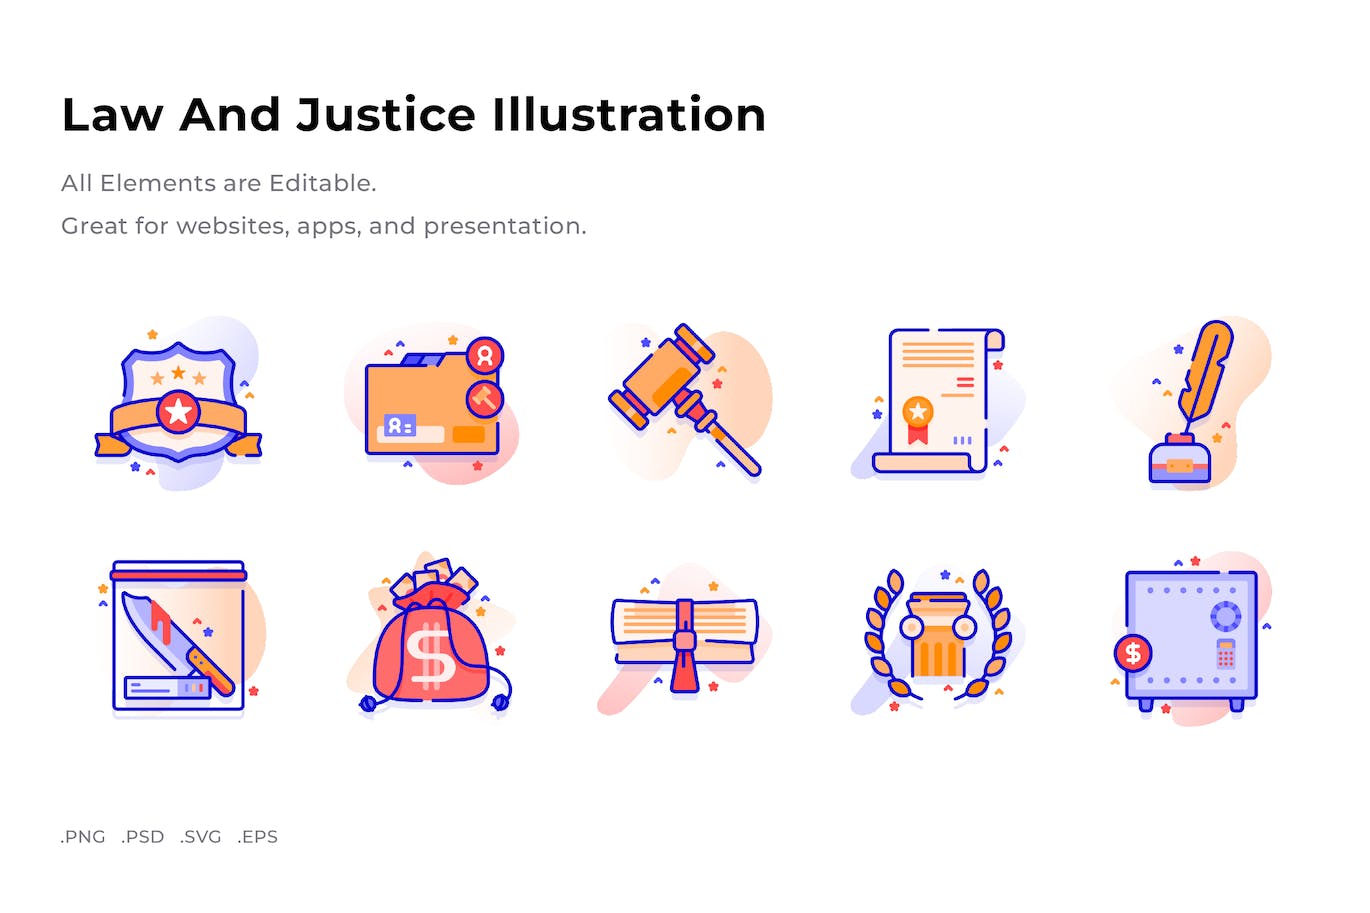 法律与司法插画彩色图标素材 (PNG,PSD,SVG)